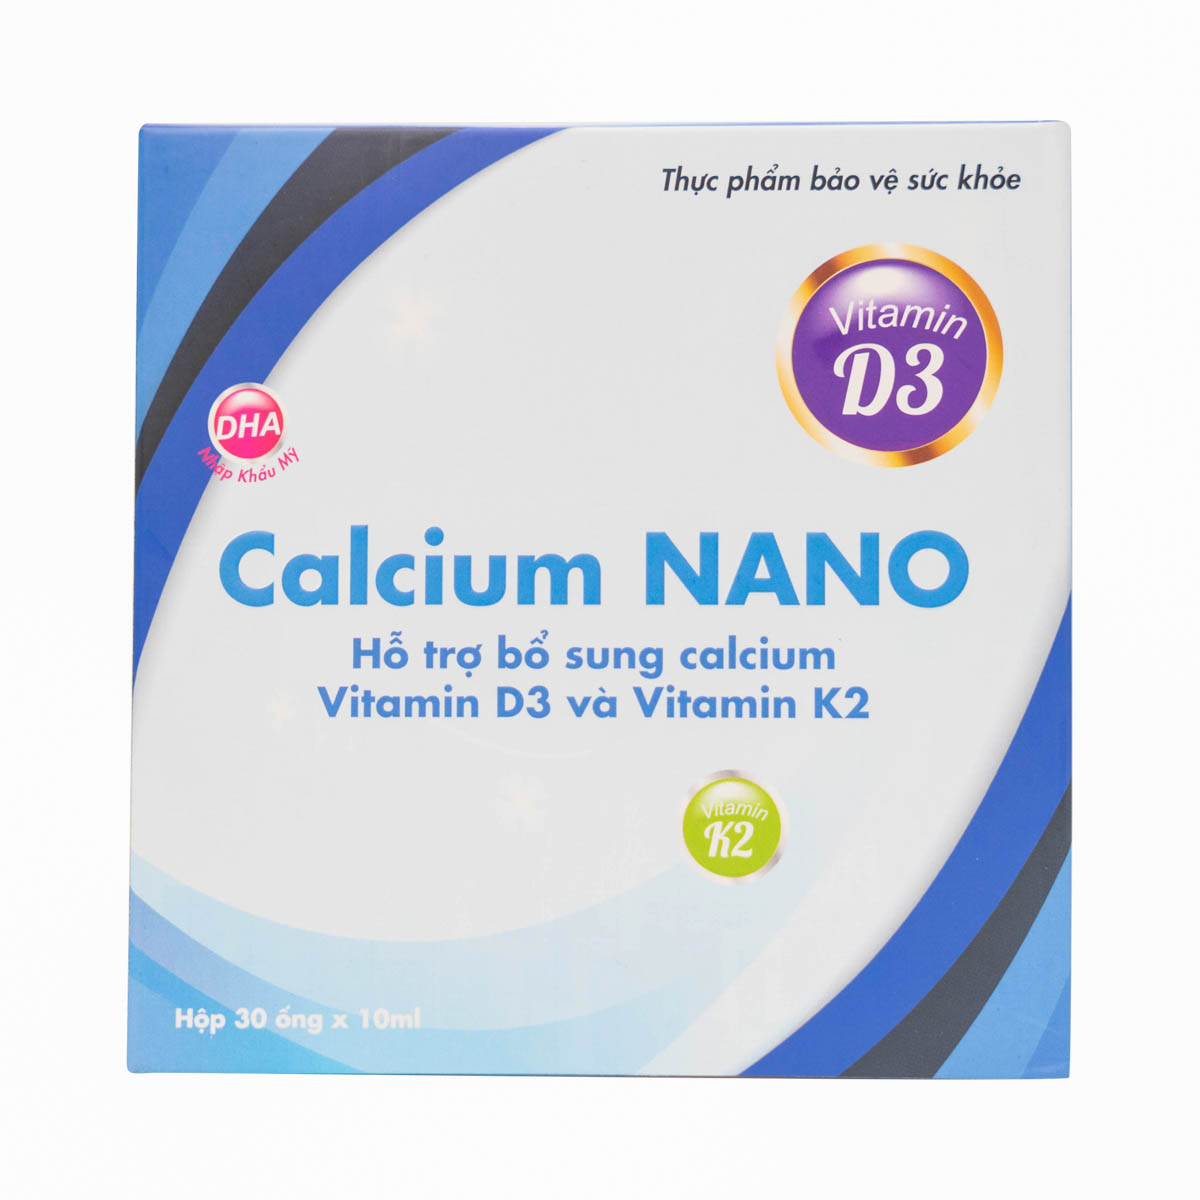 Calcium Nano - Bổ sung calcium va Vitamin D3 và K3